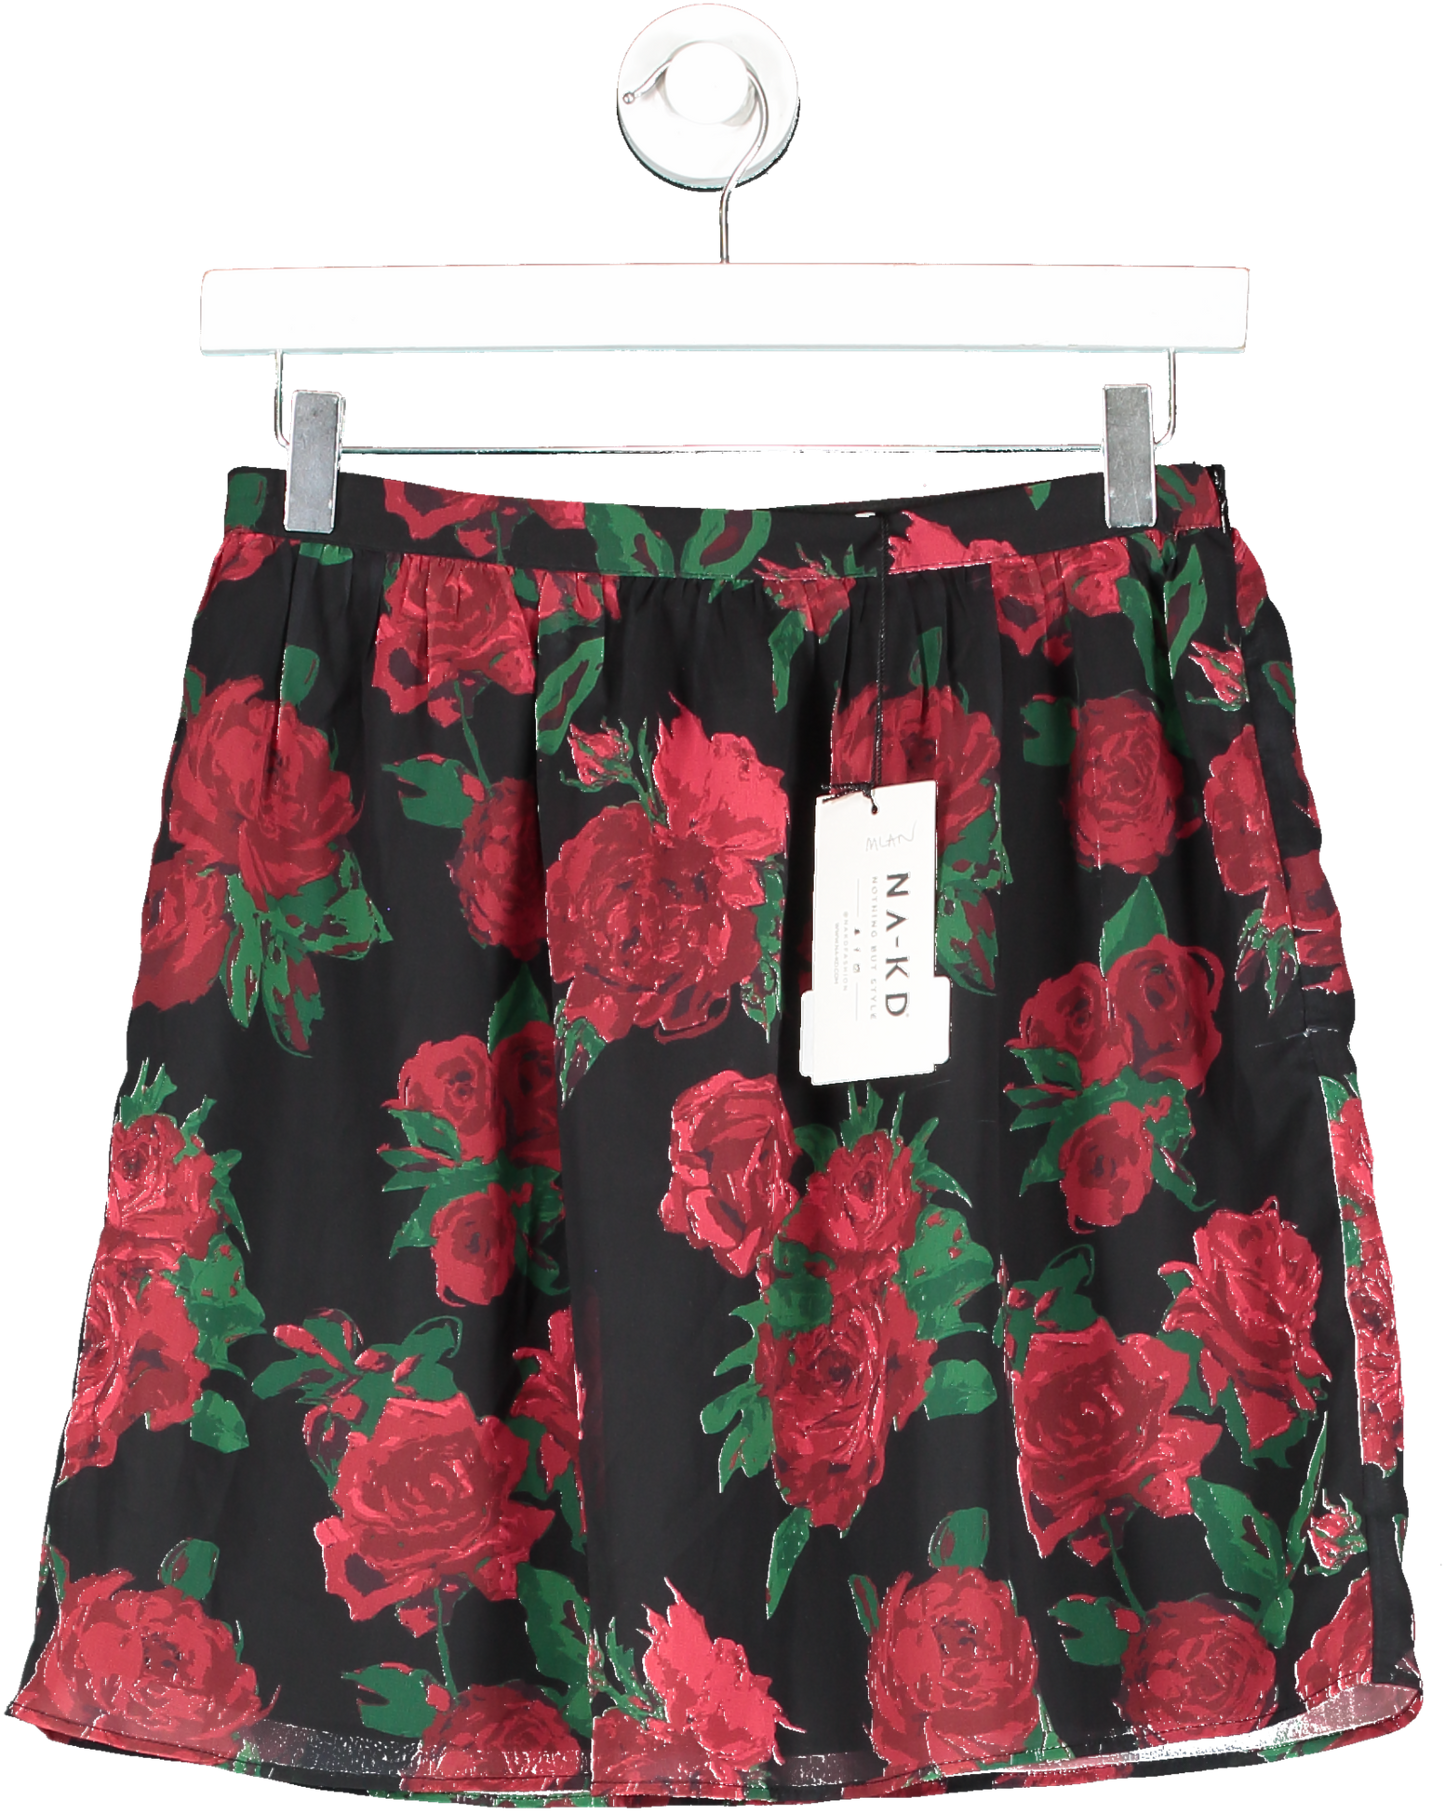 NA-KD Black Sheer Frill Mini Skirt UK 4